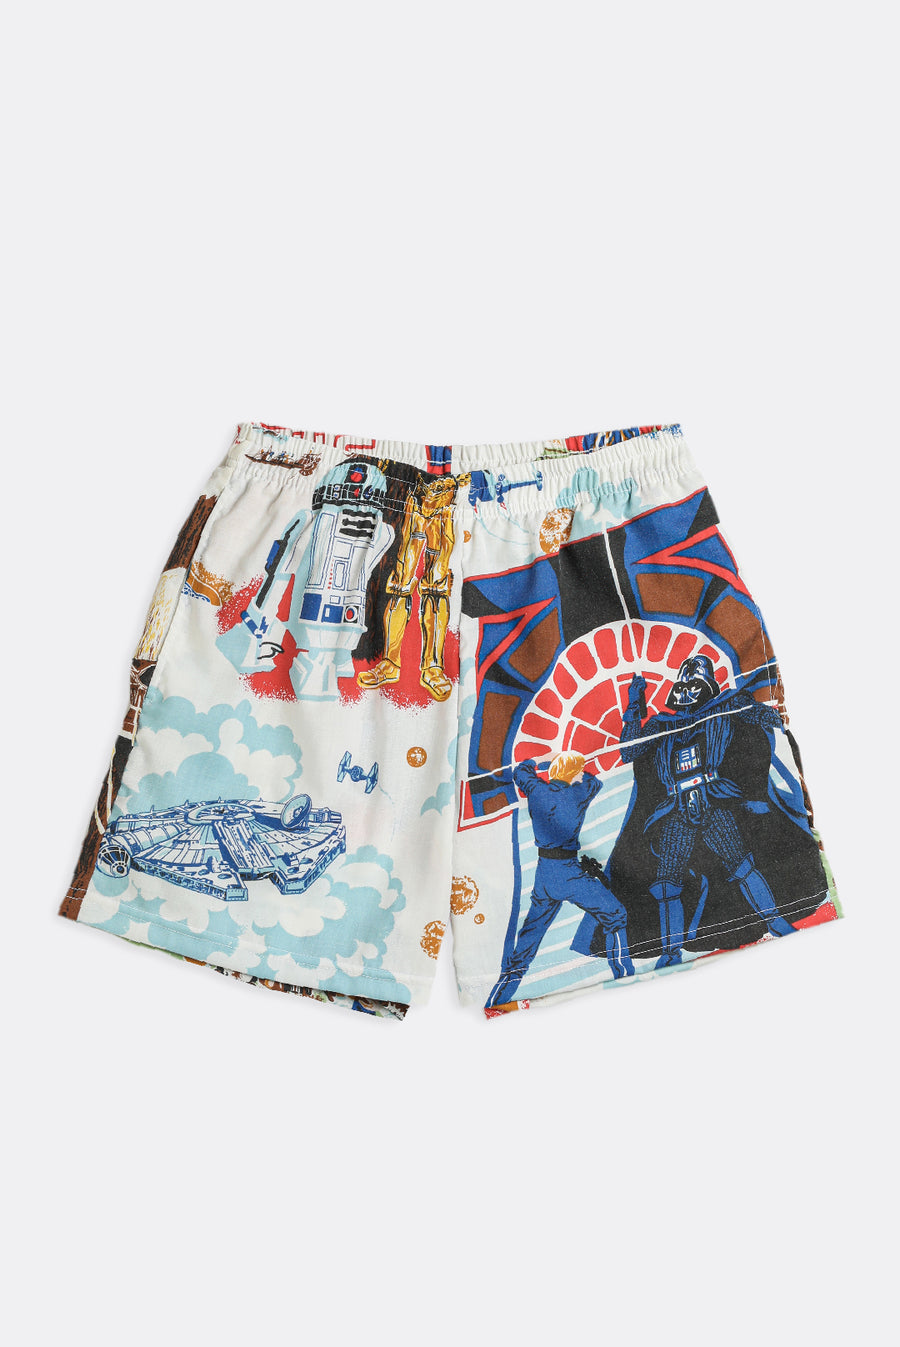 Unisex Rework Star Wars Boxer Shorts - S